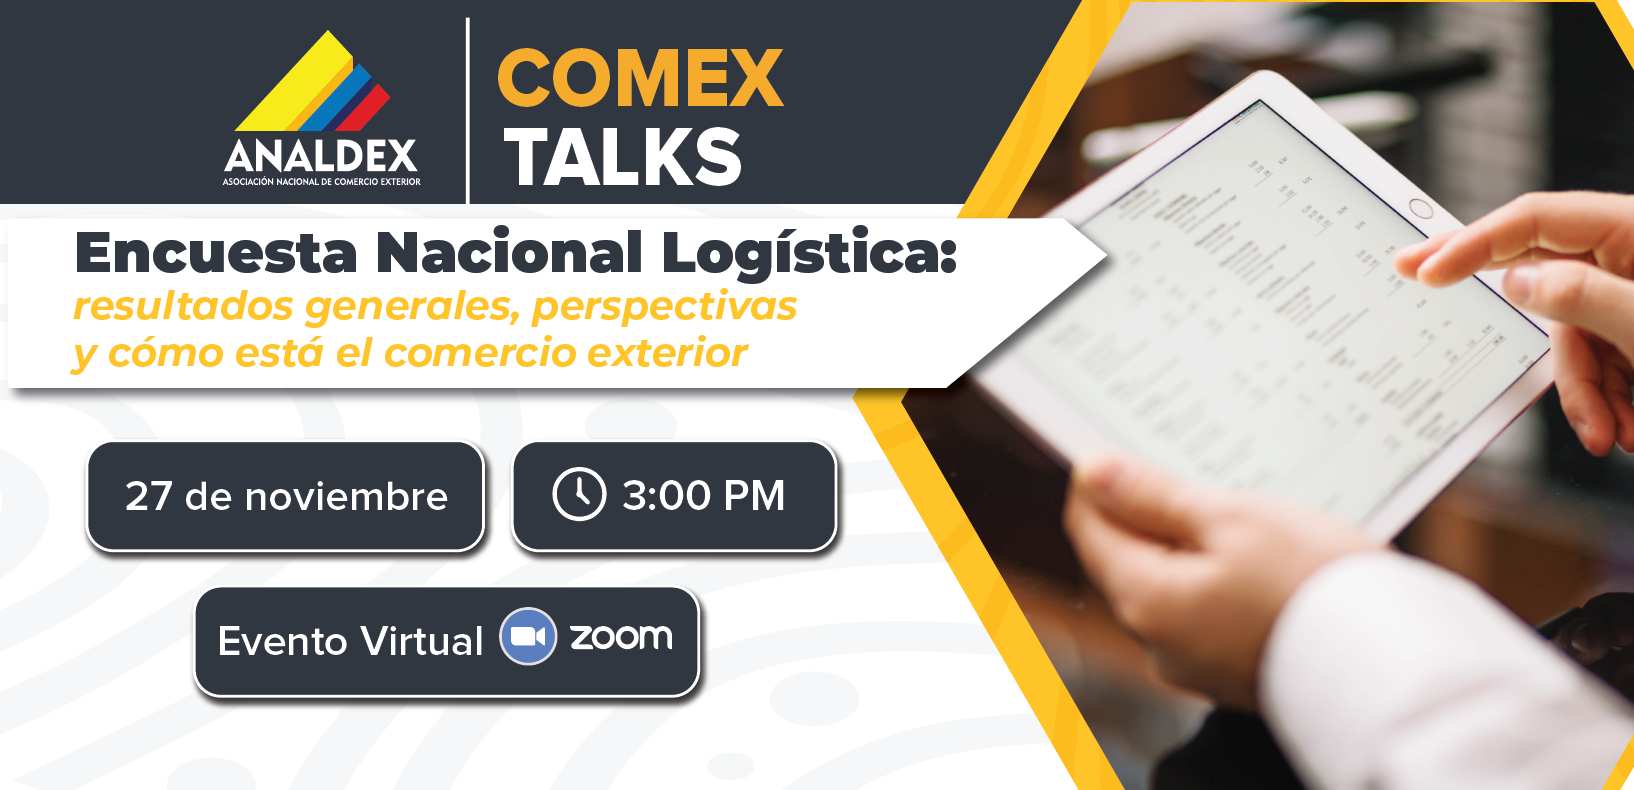 Comex Talks - Encuesta Nacional Logistica: resultados generales, perspectivas y como esta el comercio exterior